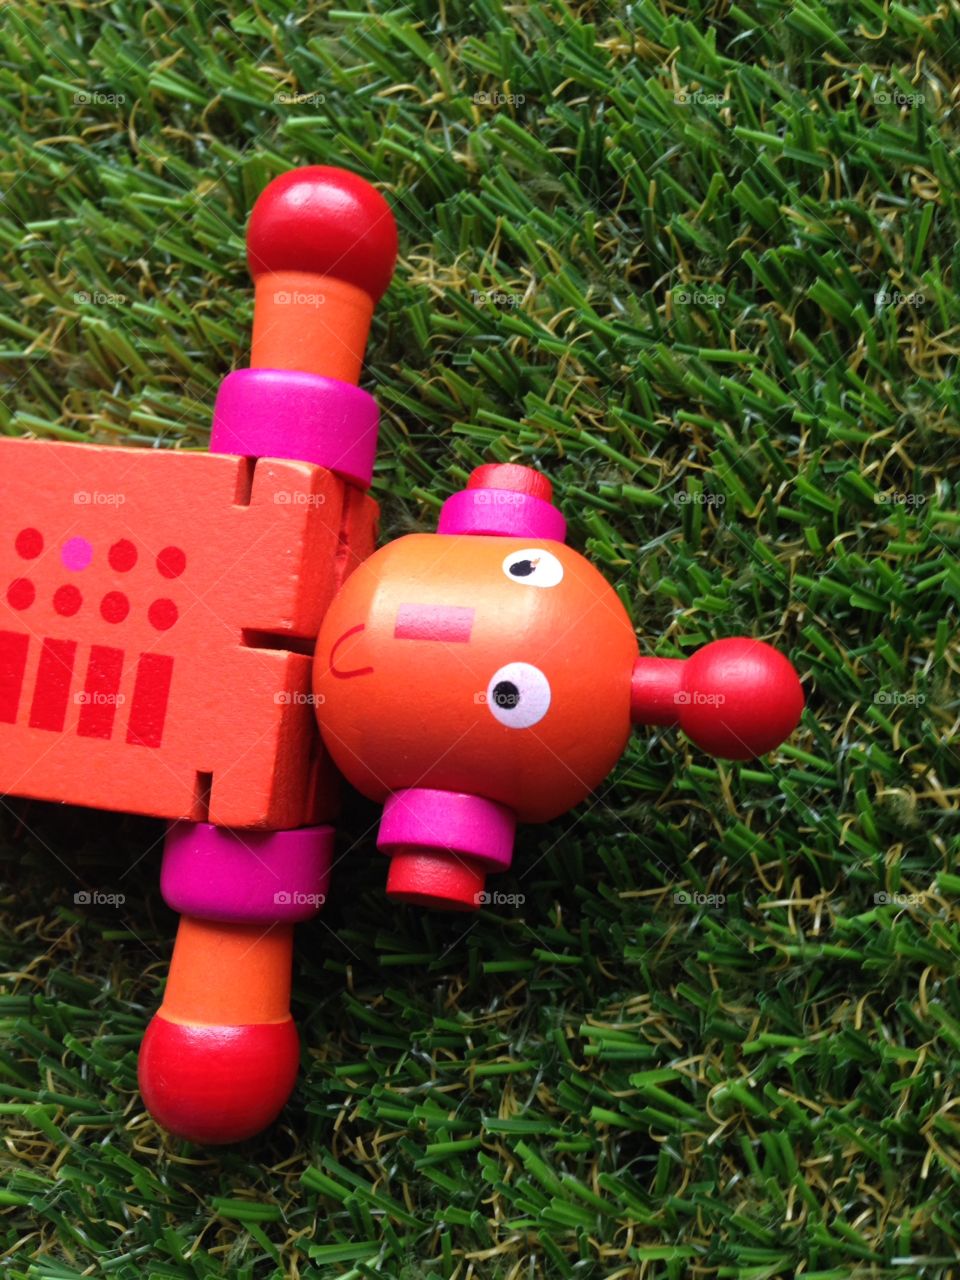 Toy robot lost in garden grass